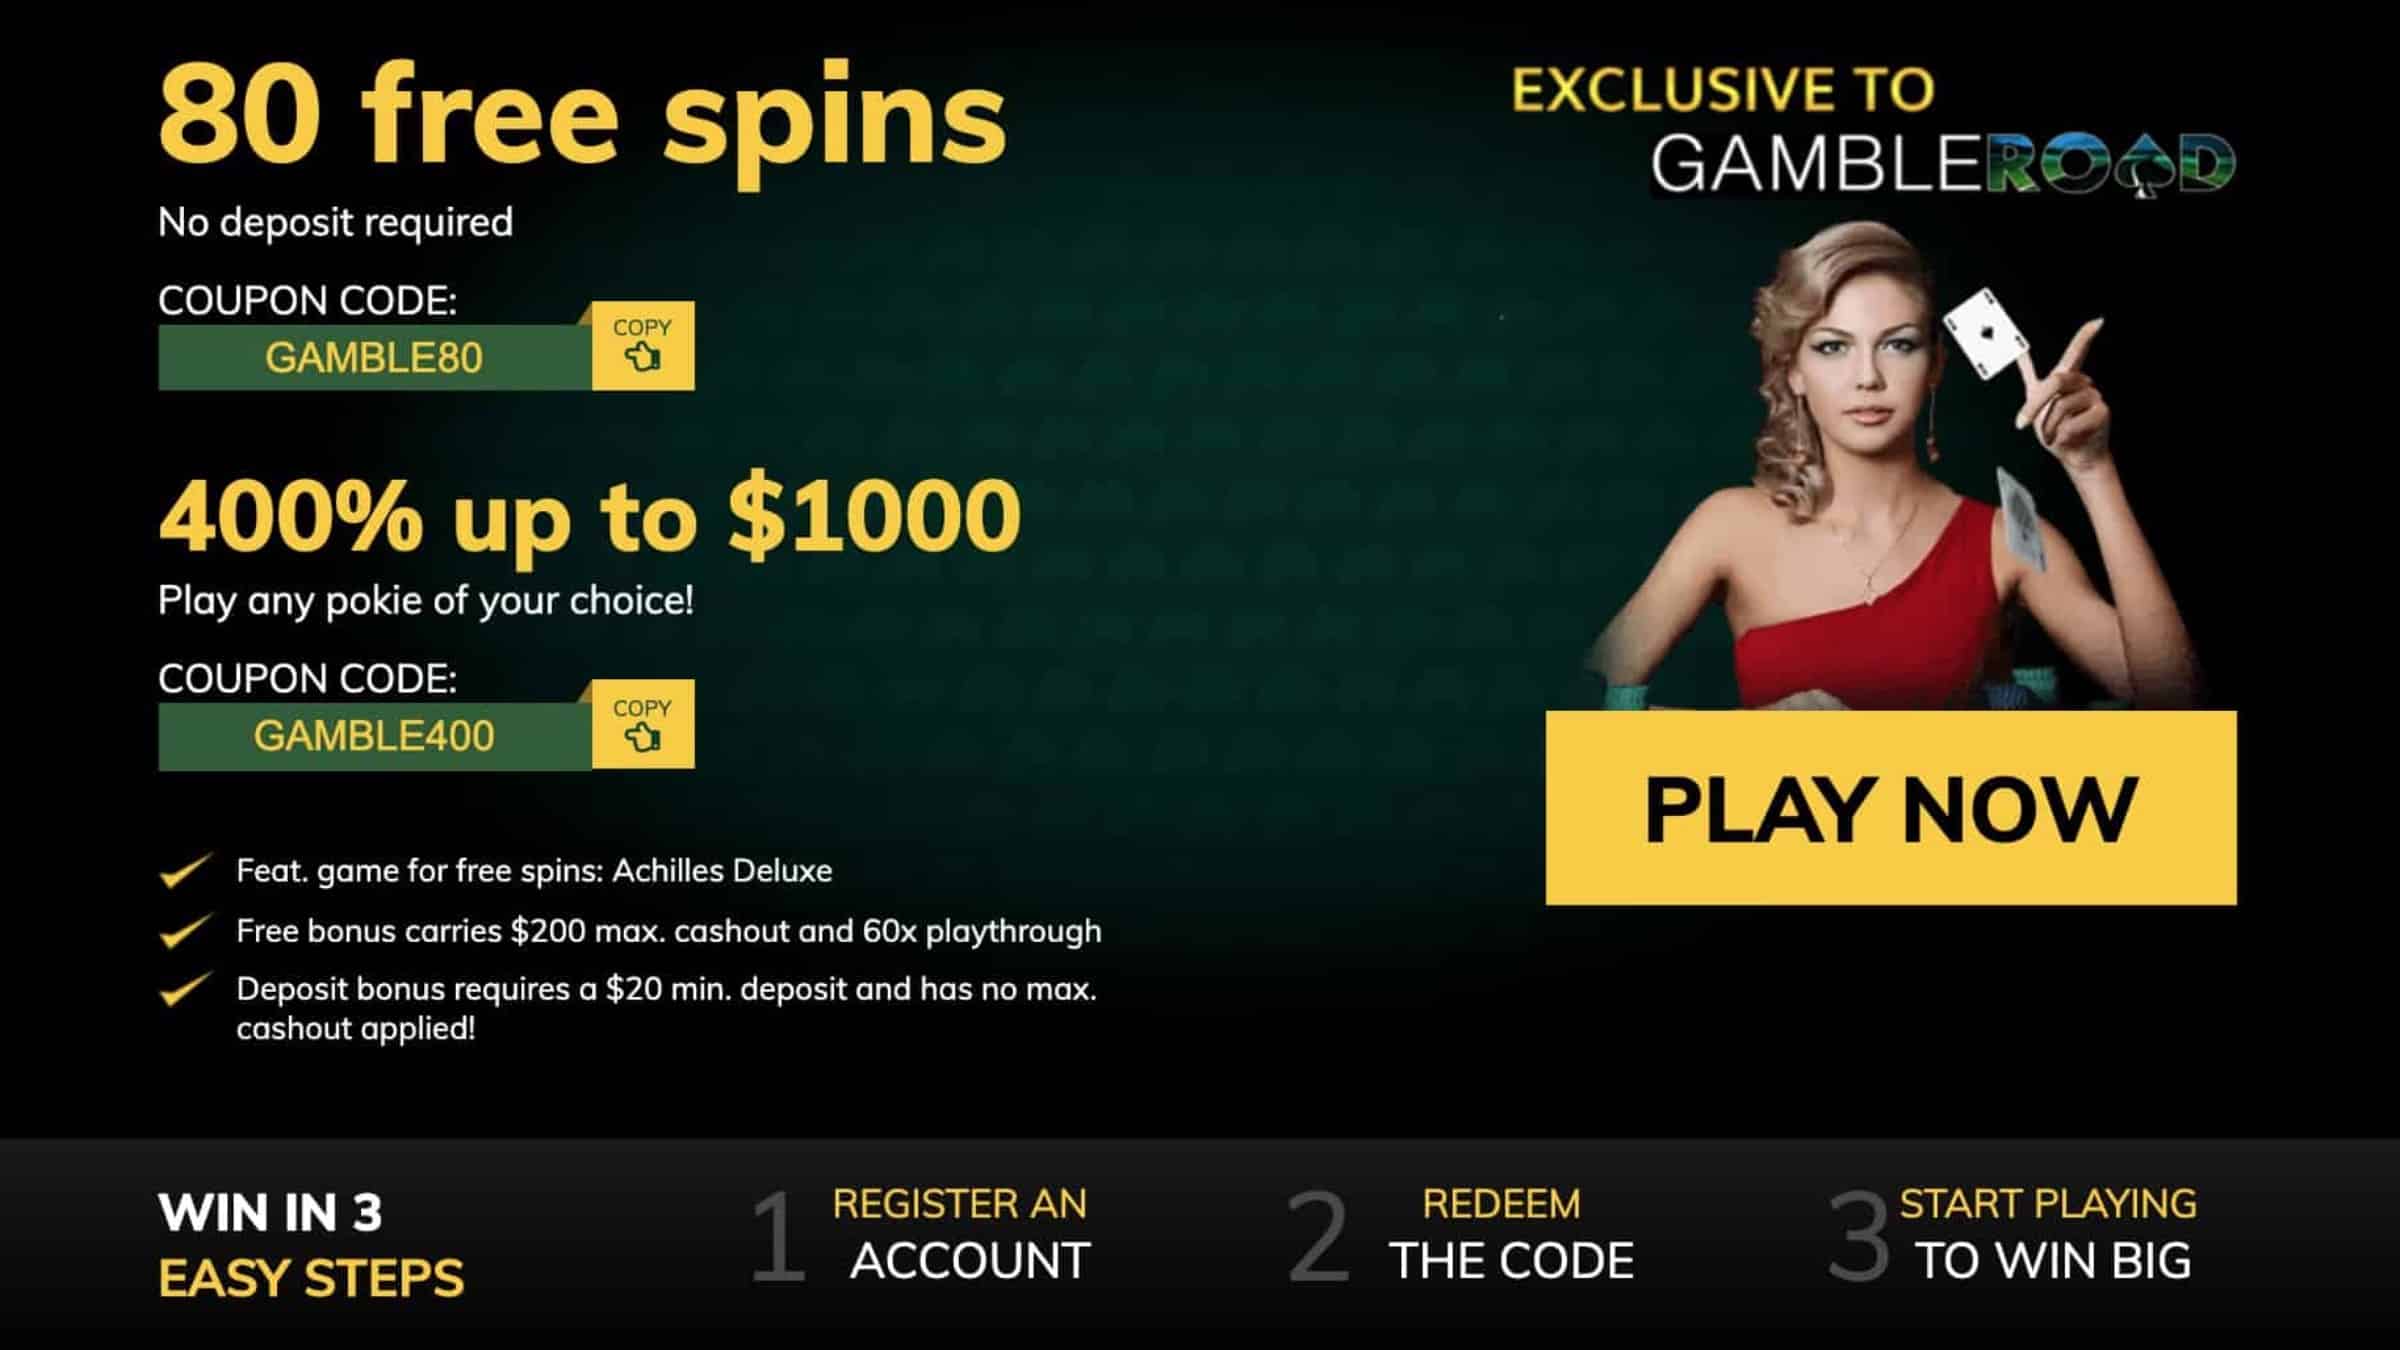 Casino $1 minimum deposit